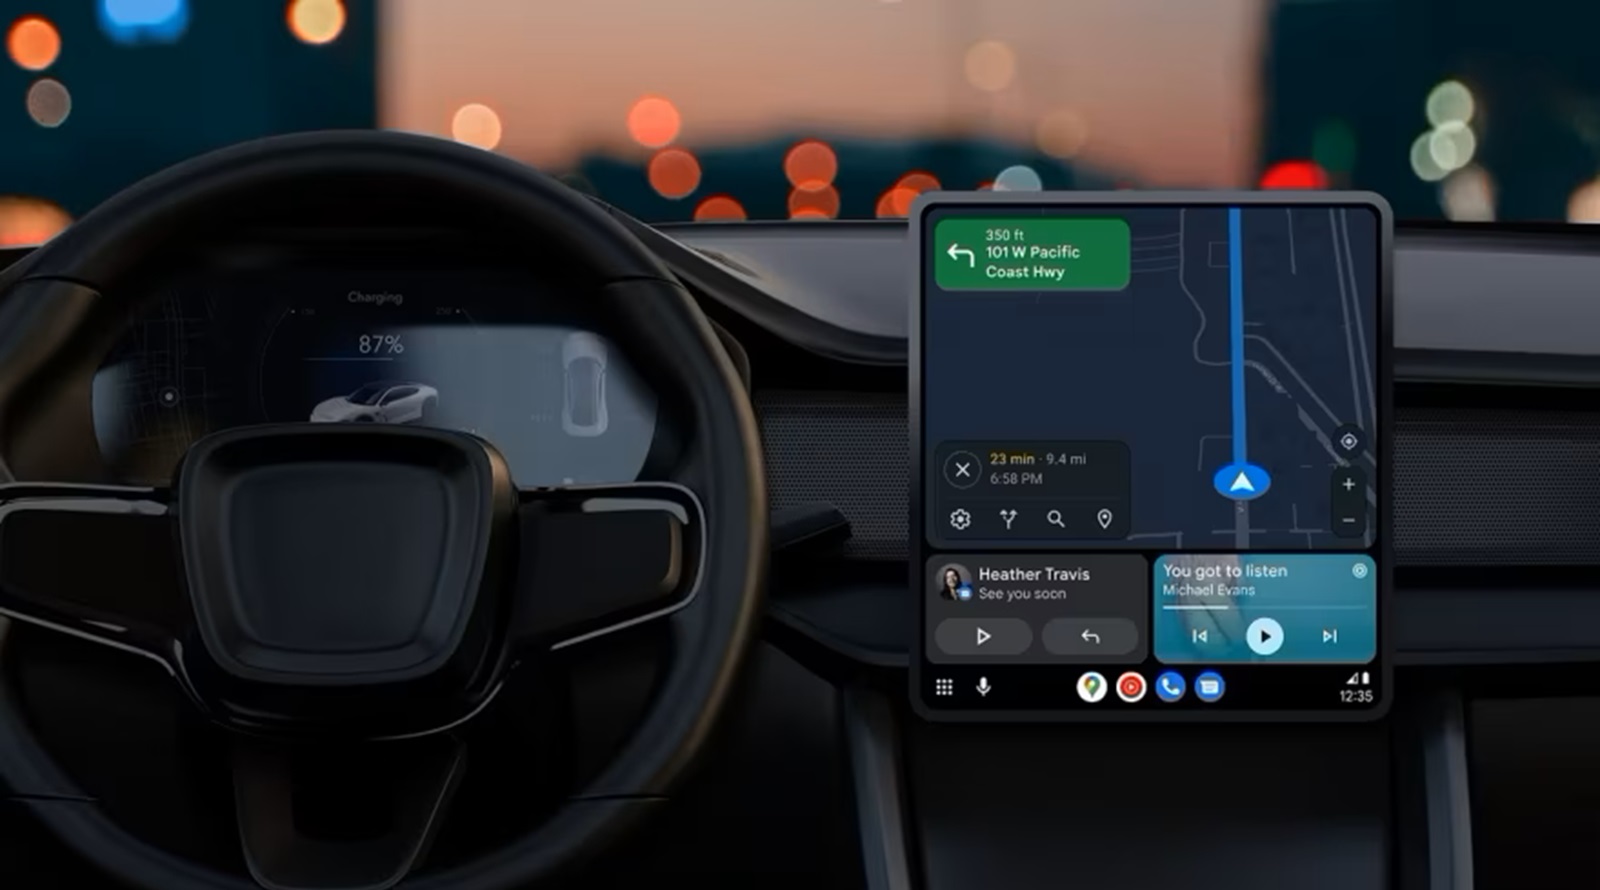 L'applicazione Meteo & Radar aggiorna delle funzioni per Android Auto